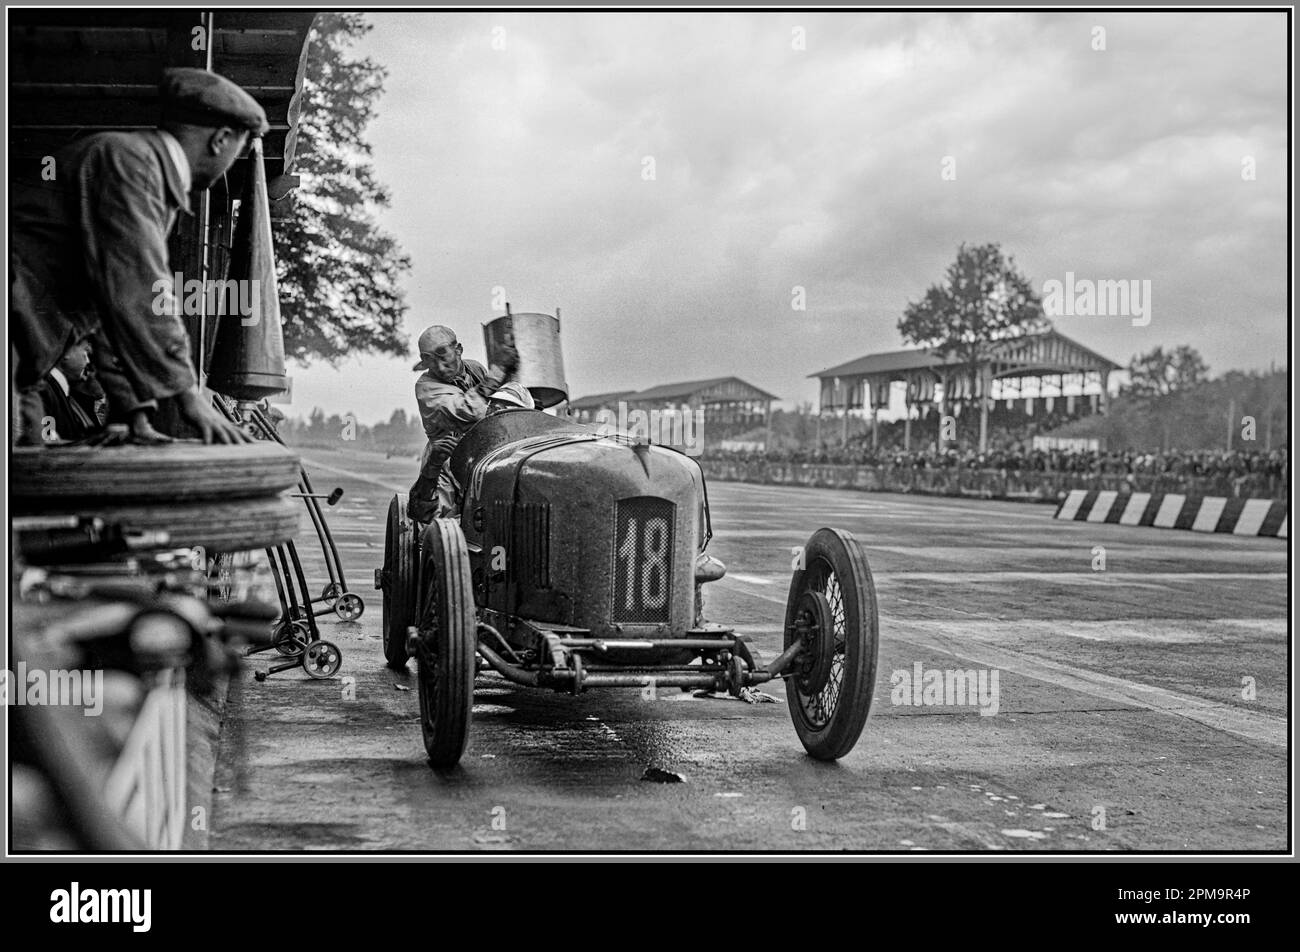 Vincitore, primo Gran Premio d'Italia a Monza 1922 - l'italiano Pietro Bordino ha pilotato la sua Fiat 804 numero 18 alla vittoria al primo Gran Premio d'Italia a Monza Gran Premio d'Italia gara d'epoca Pietro Bordino, vincitore del Gran Premio d'Italia 1922, vainqueur du Grand Prix d'Italie 1922 (voiture ET voiturette Foto Stock